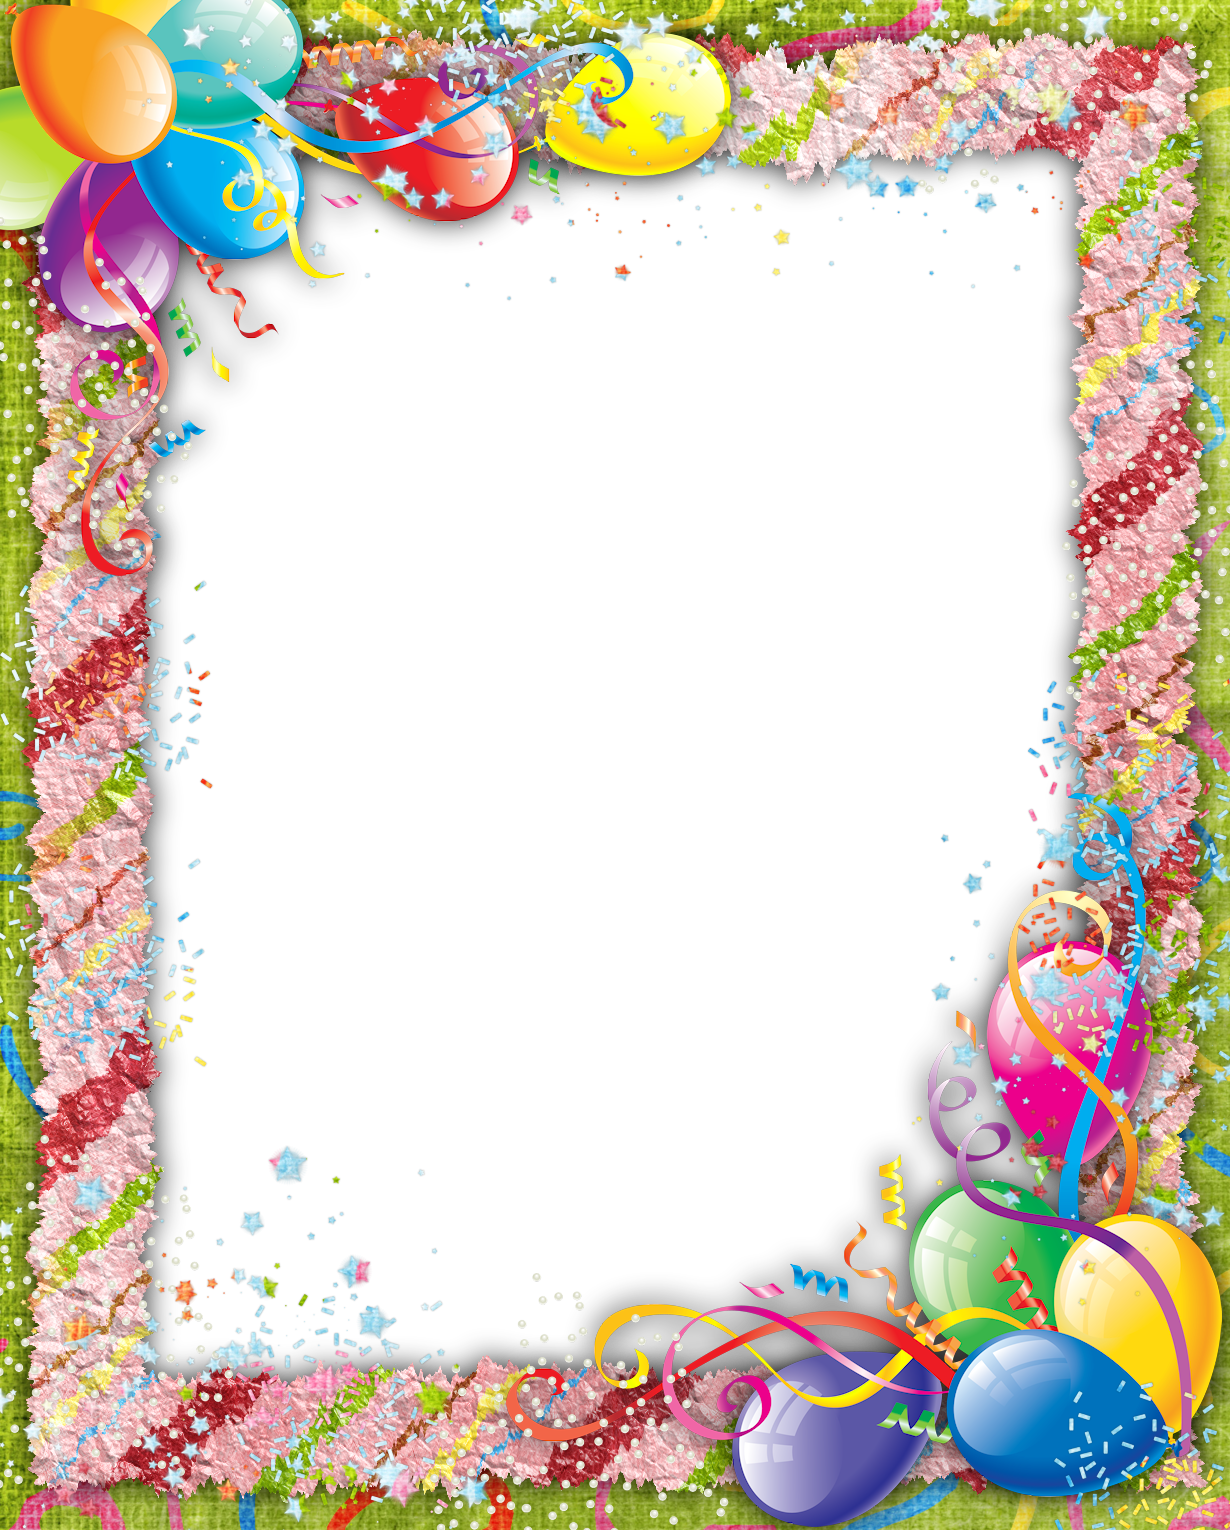 Frame de cumpleaños PNG descarga gratuita